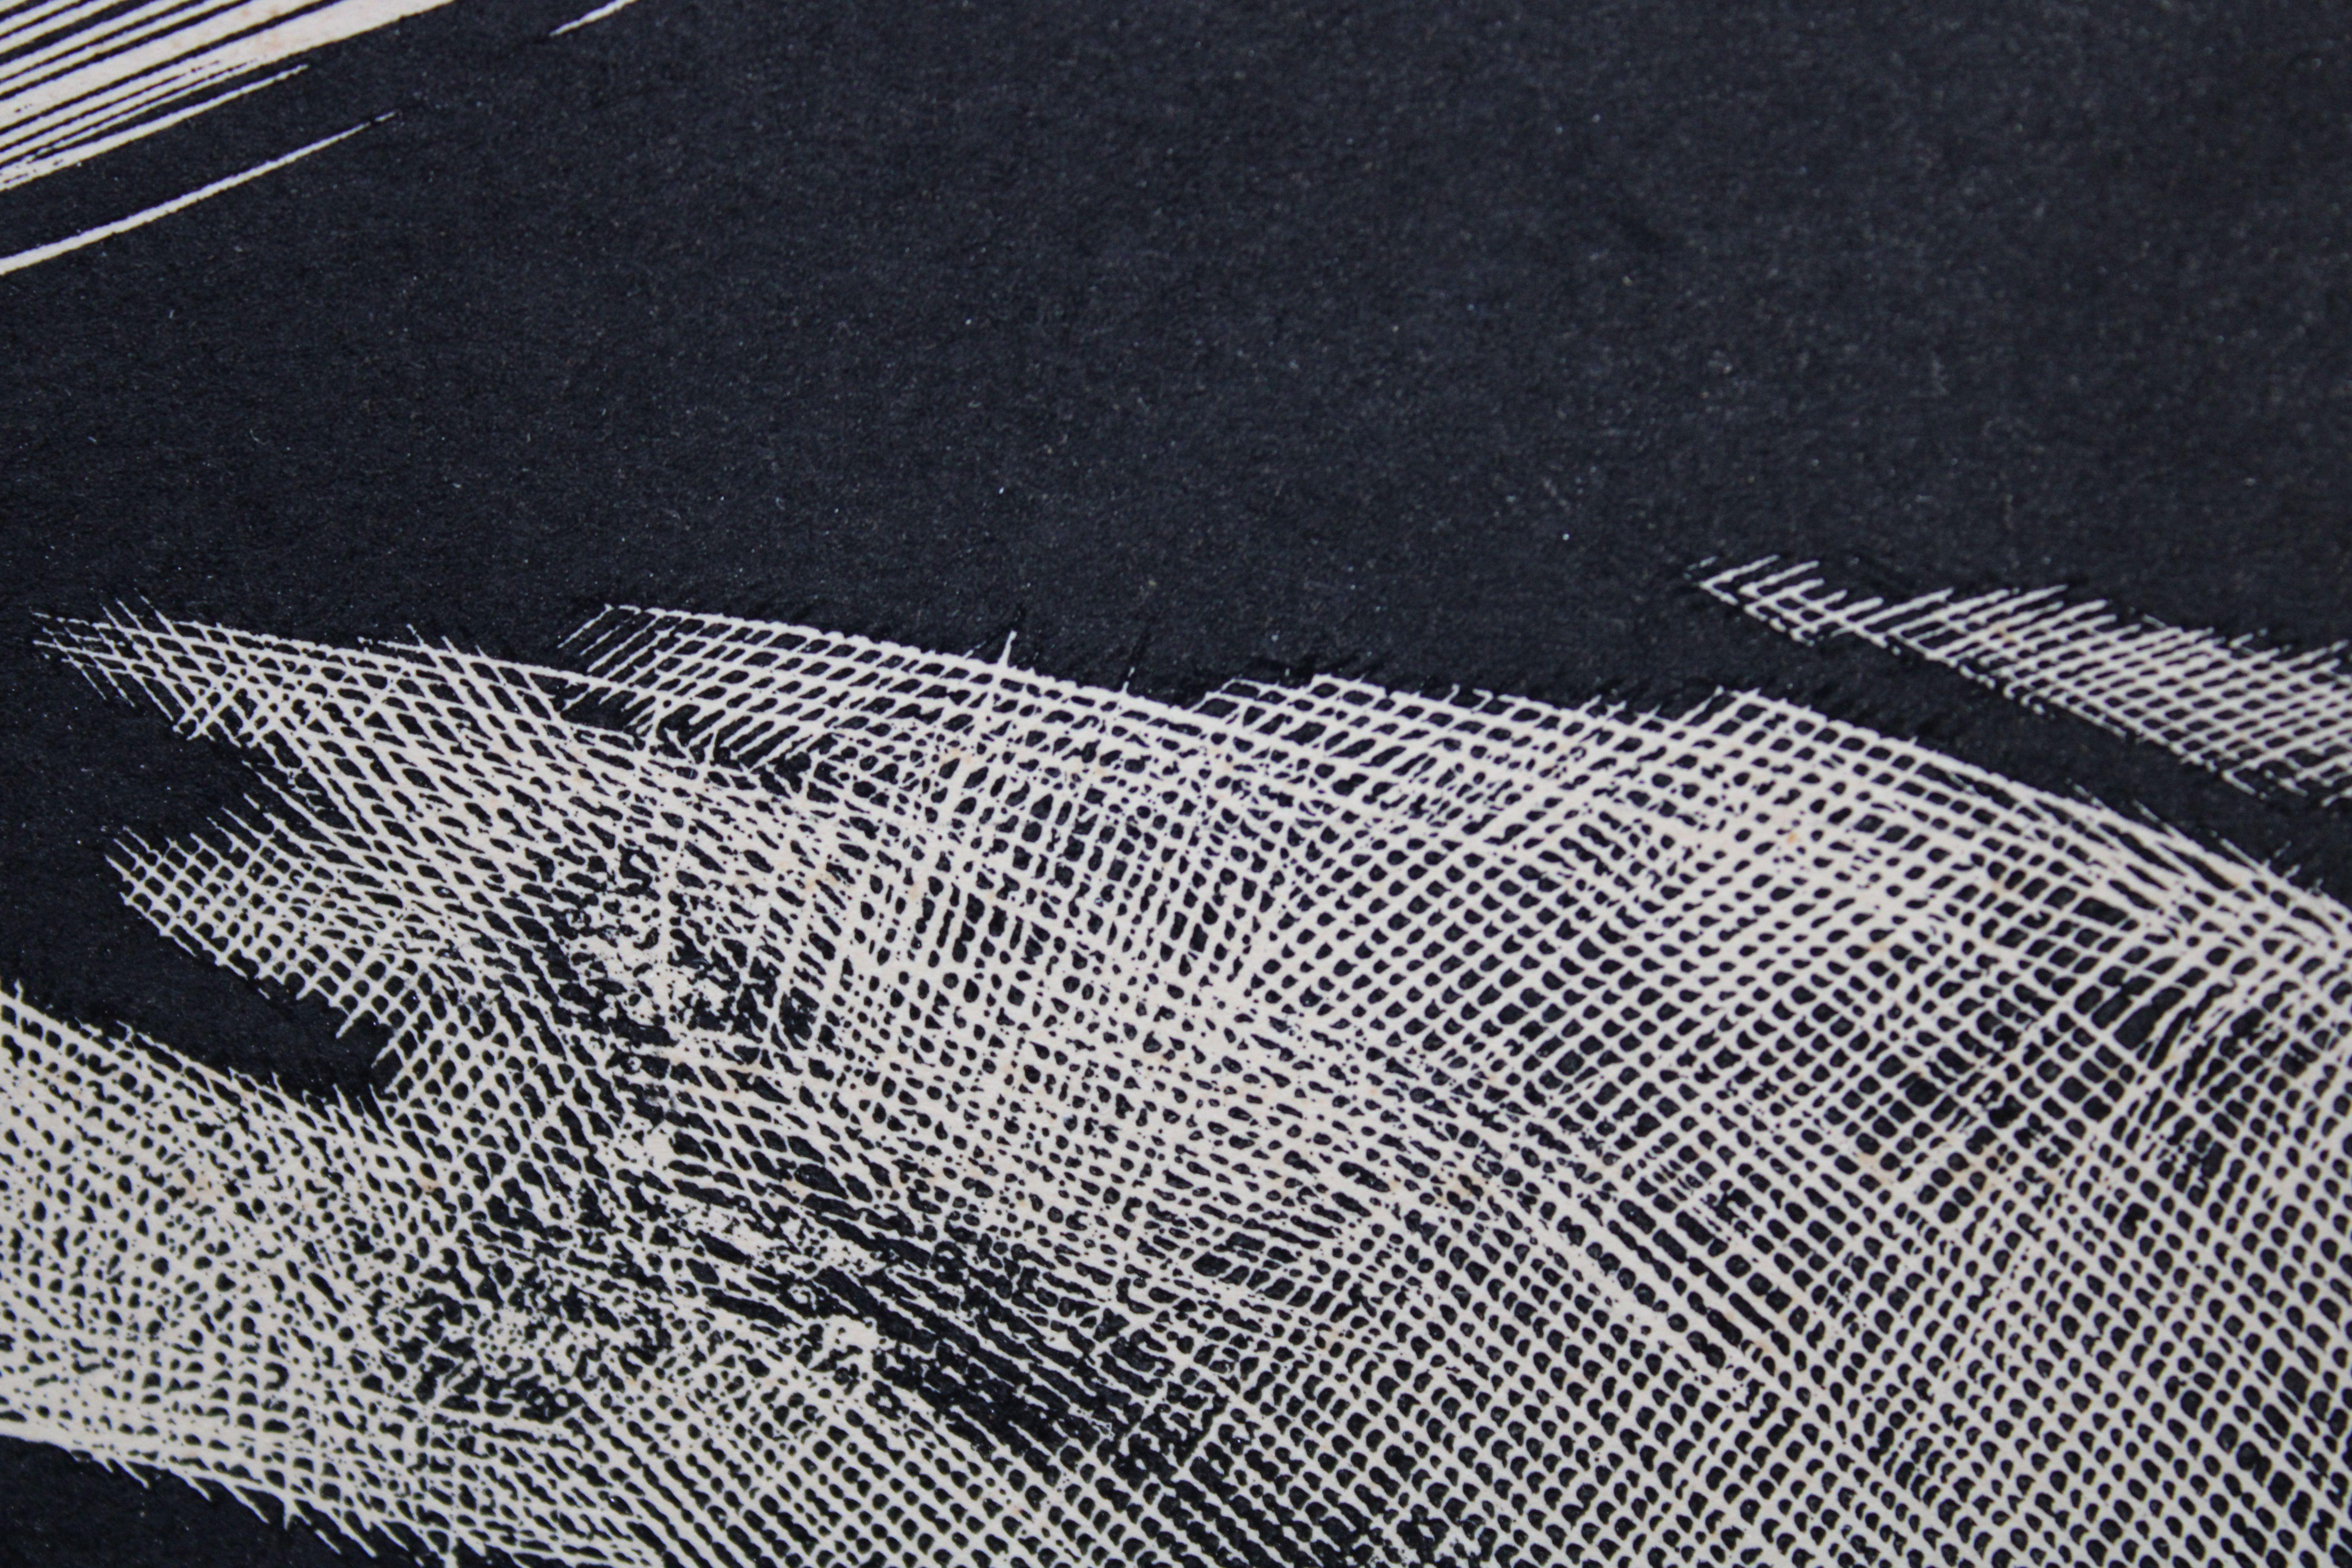 Stillleben 13/100. Papier, Linolschnitt, 5/100, 22x25 cm, 1967 (Realismus), Print, von Olgerts Abelite